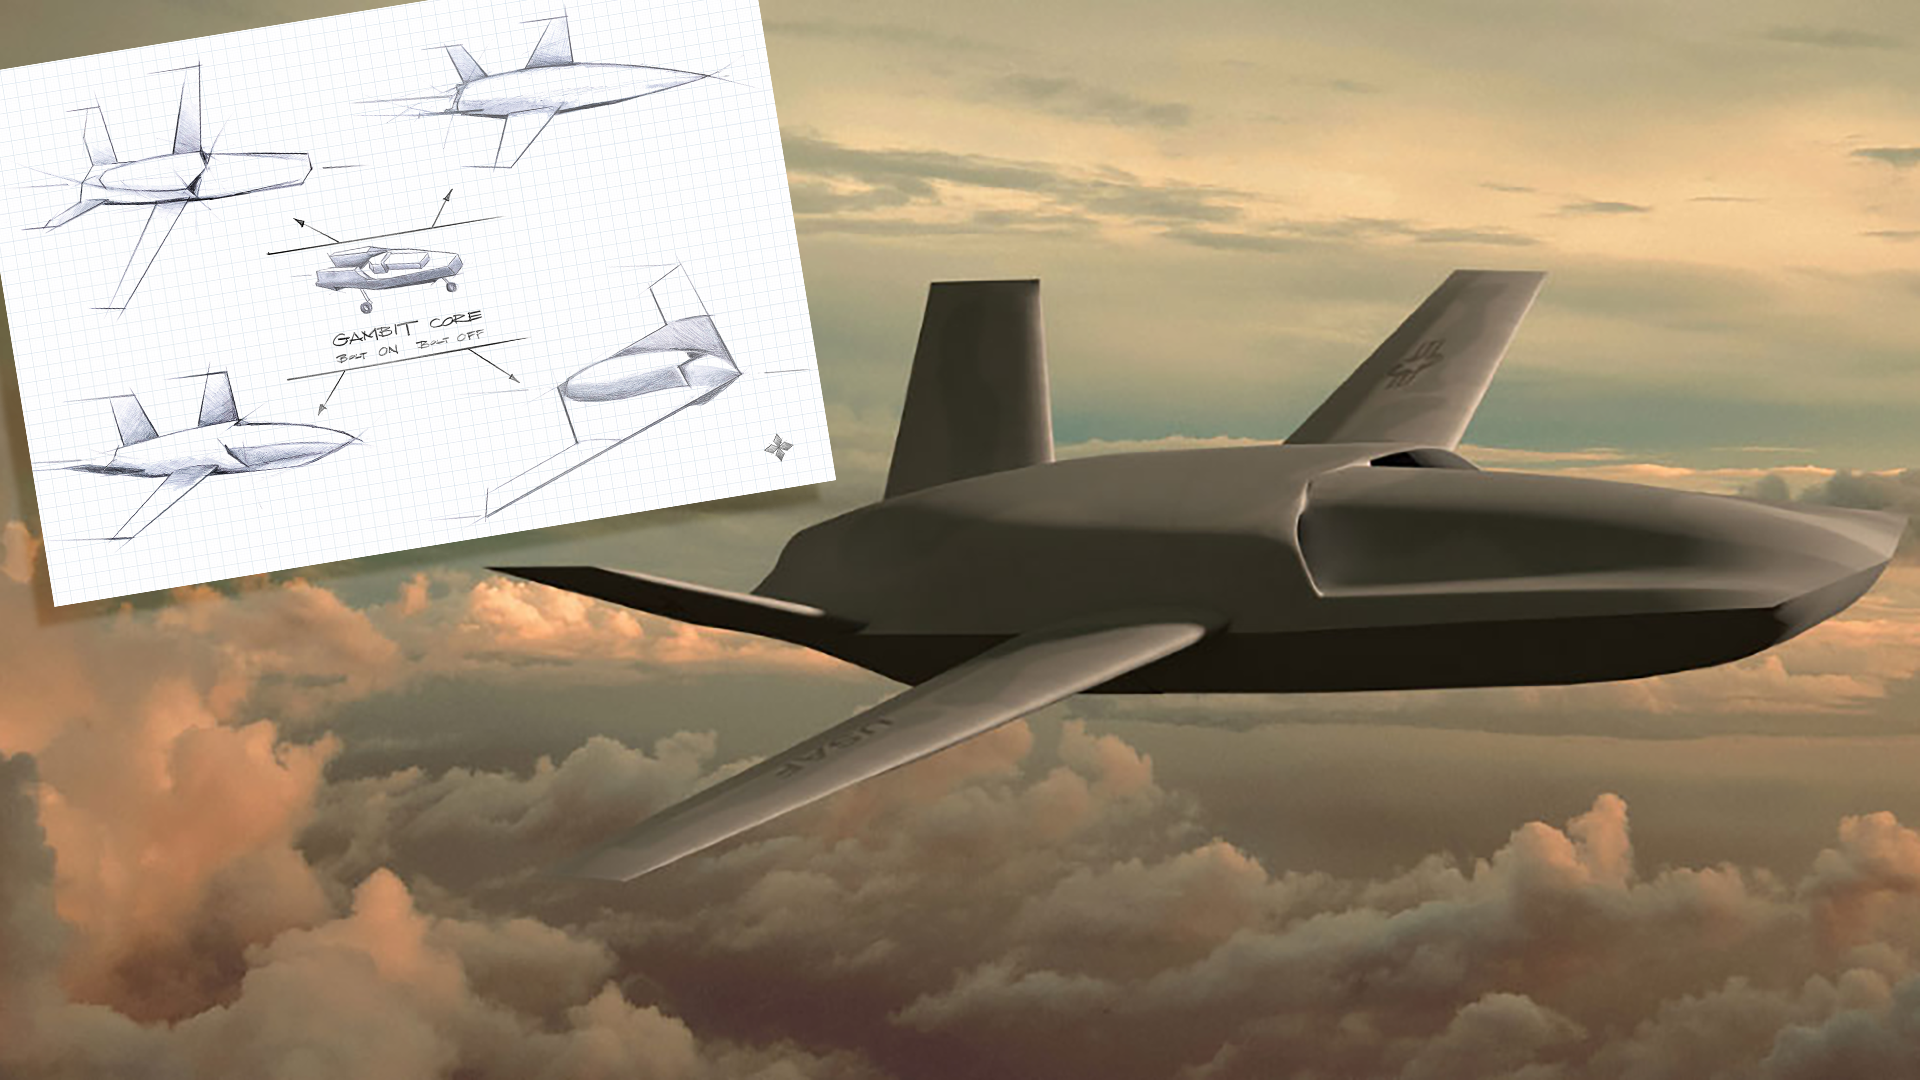 General Atomics Aeronautical Systems zaprezentował serię modułowych UAV Gambit - w jej skład wchodzi dron uderzeniowy, rozpoznawczy, testowy i stealth